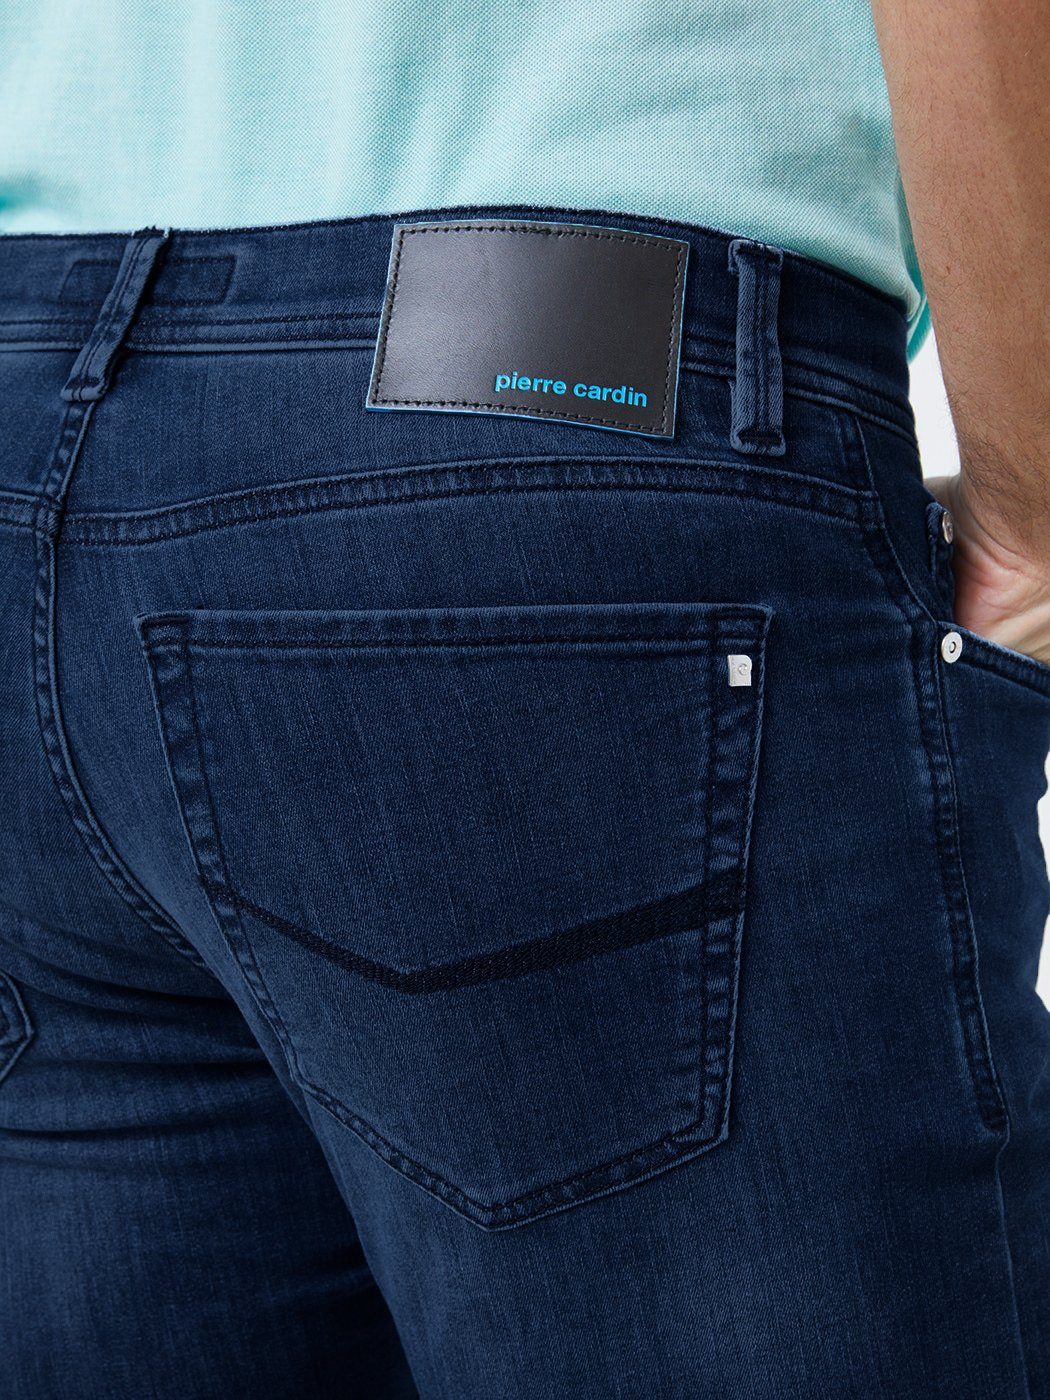 Pierre Cardin 5-Pocket-Jeans washed out 8880.70 3451 FUTUREFLEX light CARDIN LYON blue dark PIERRE